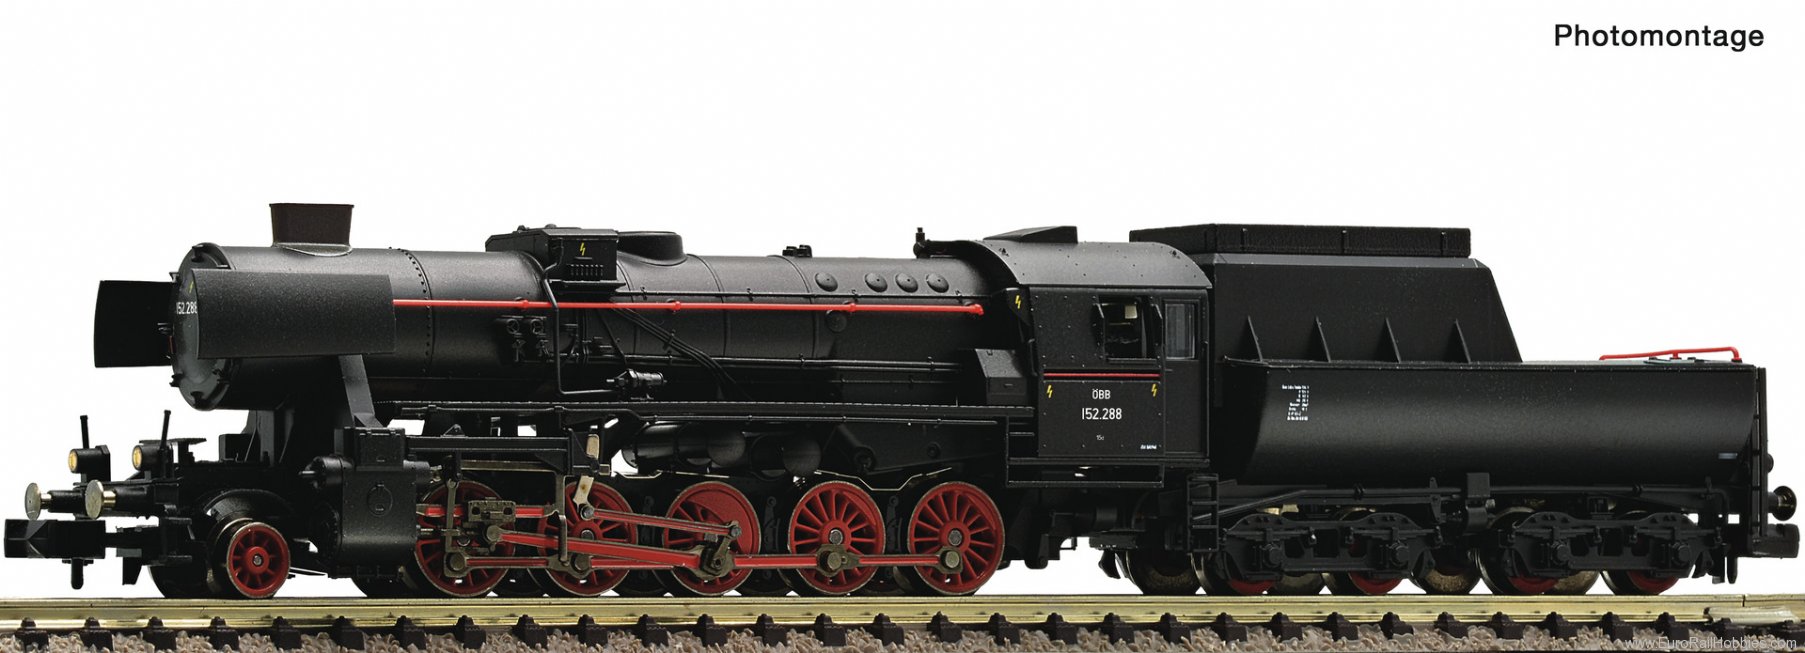 Fleischmann 7160011 Steam locomotive 152 288, ÃBB (DC Analog)